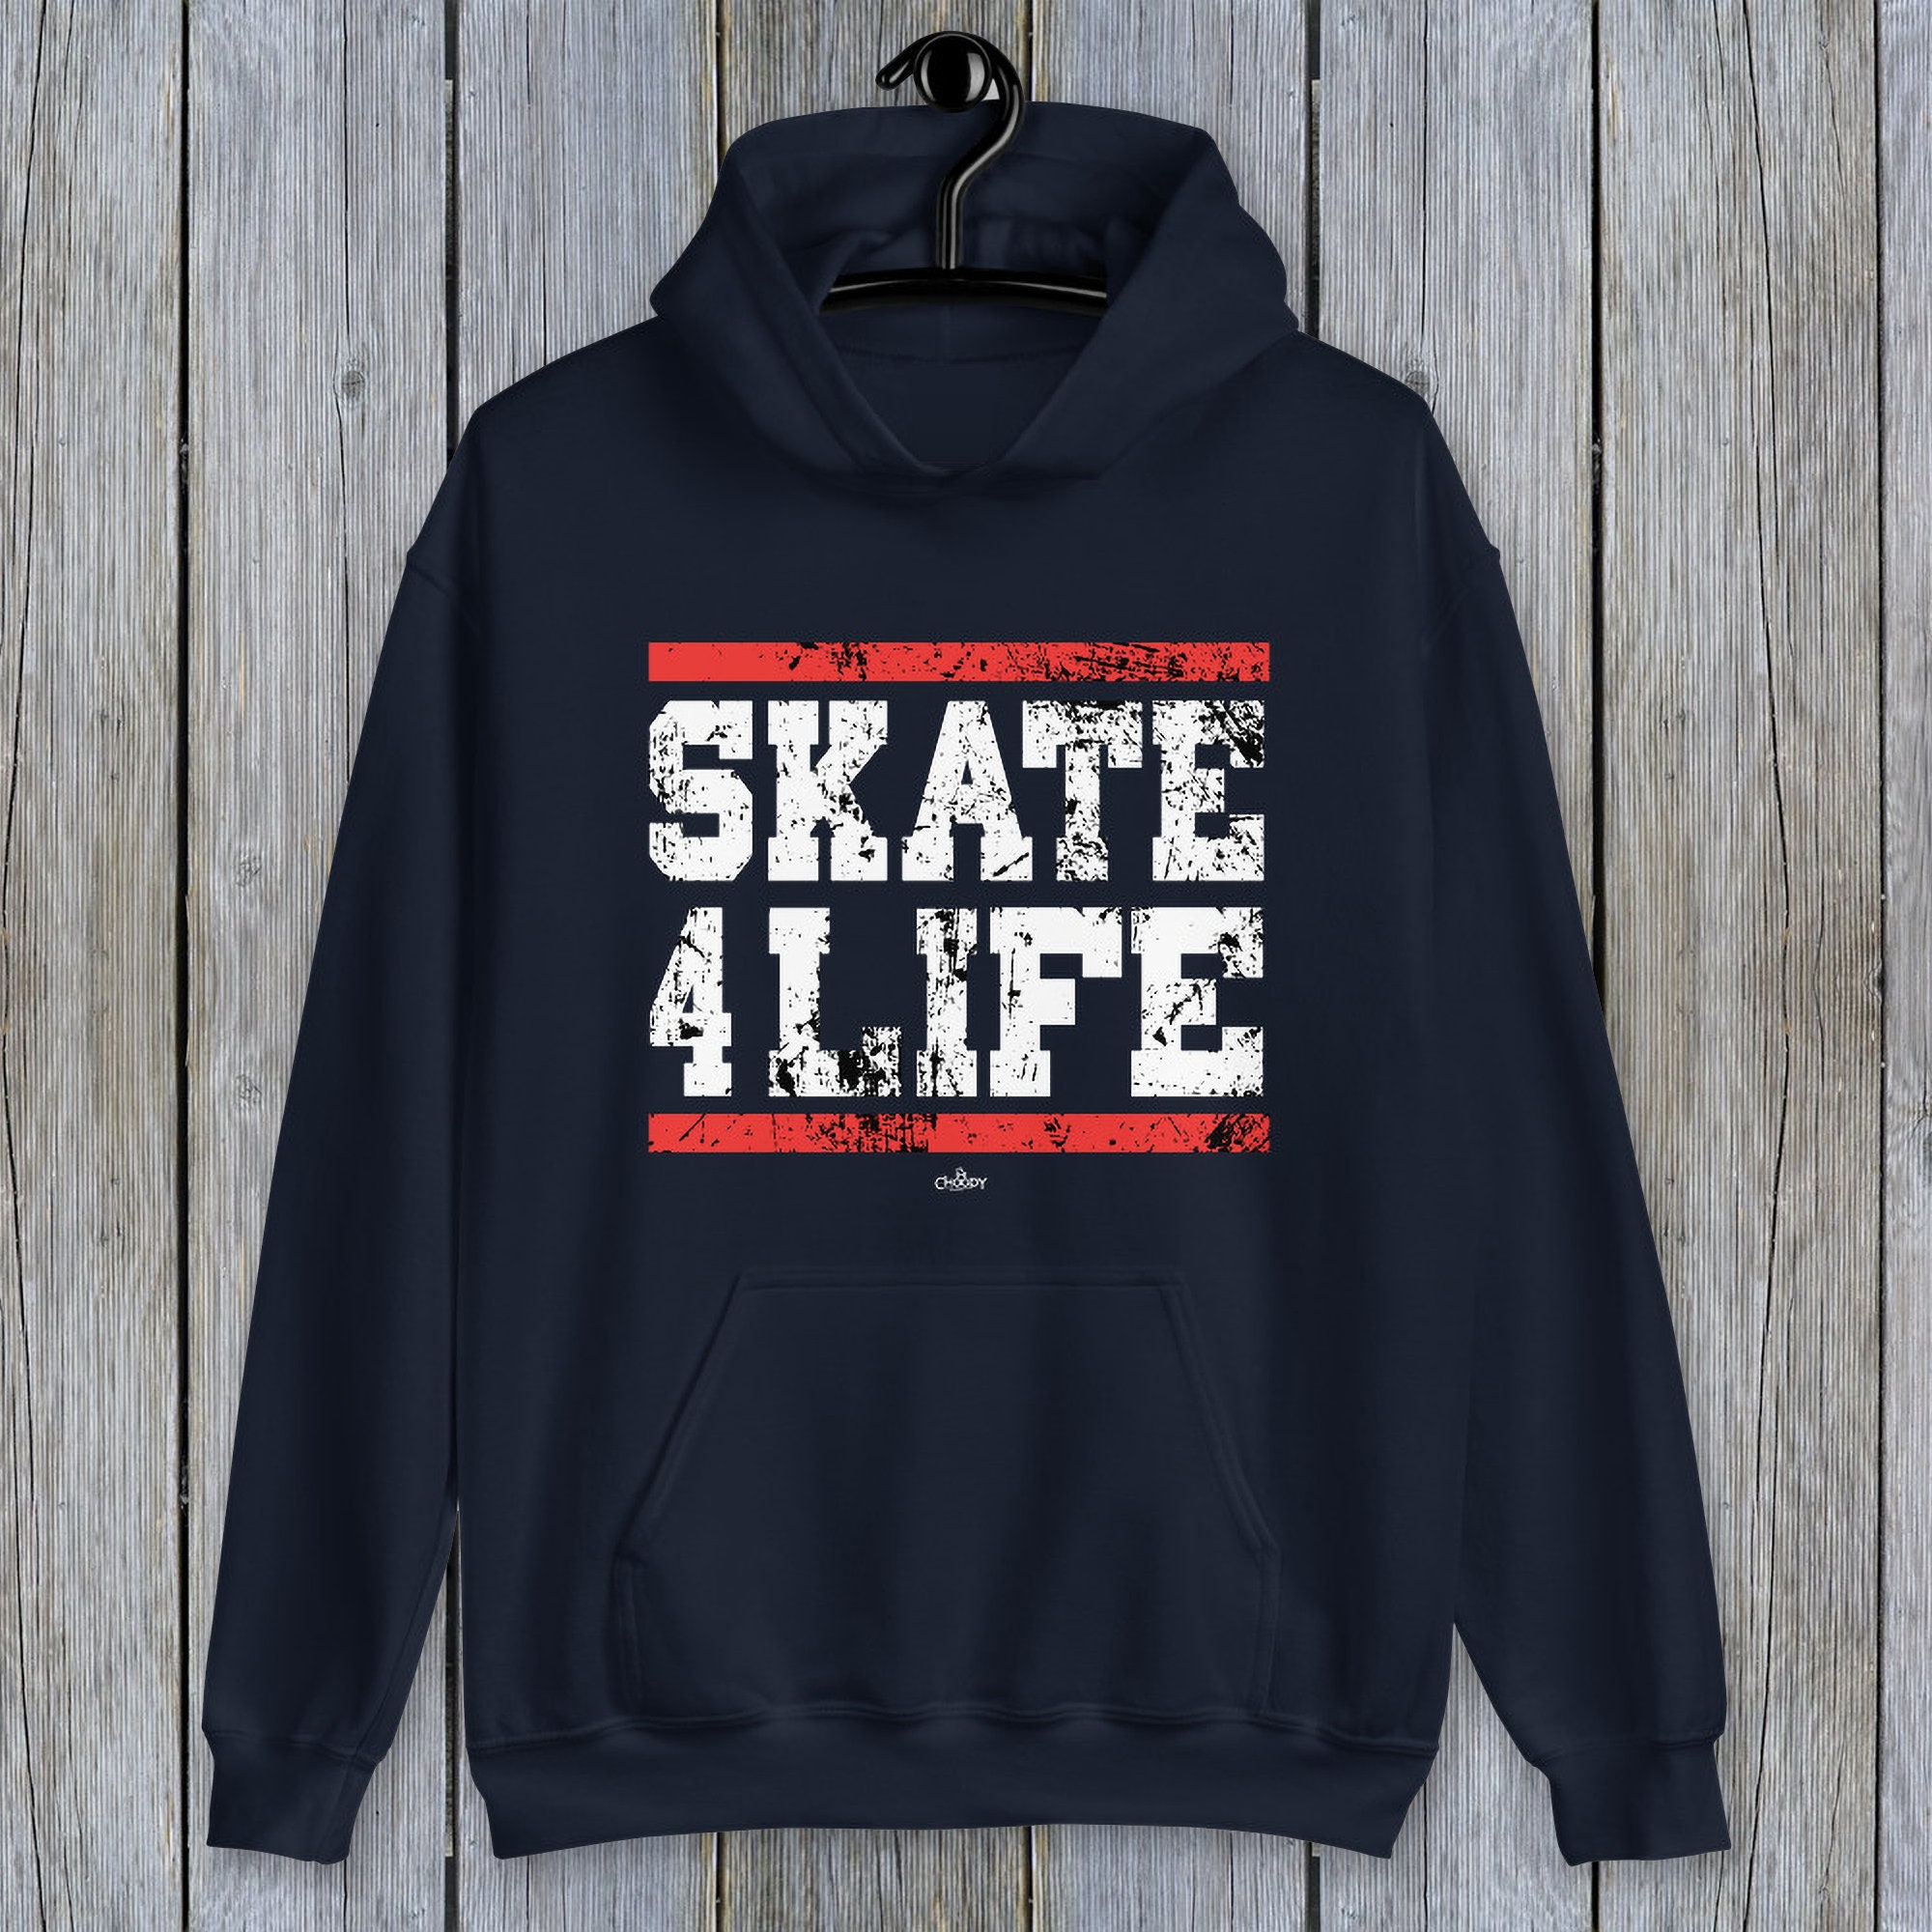 Skate 4 life